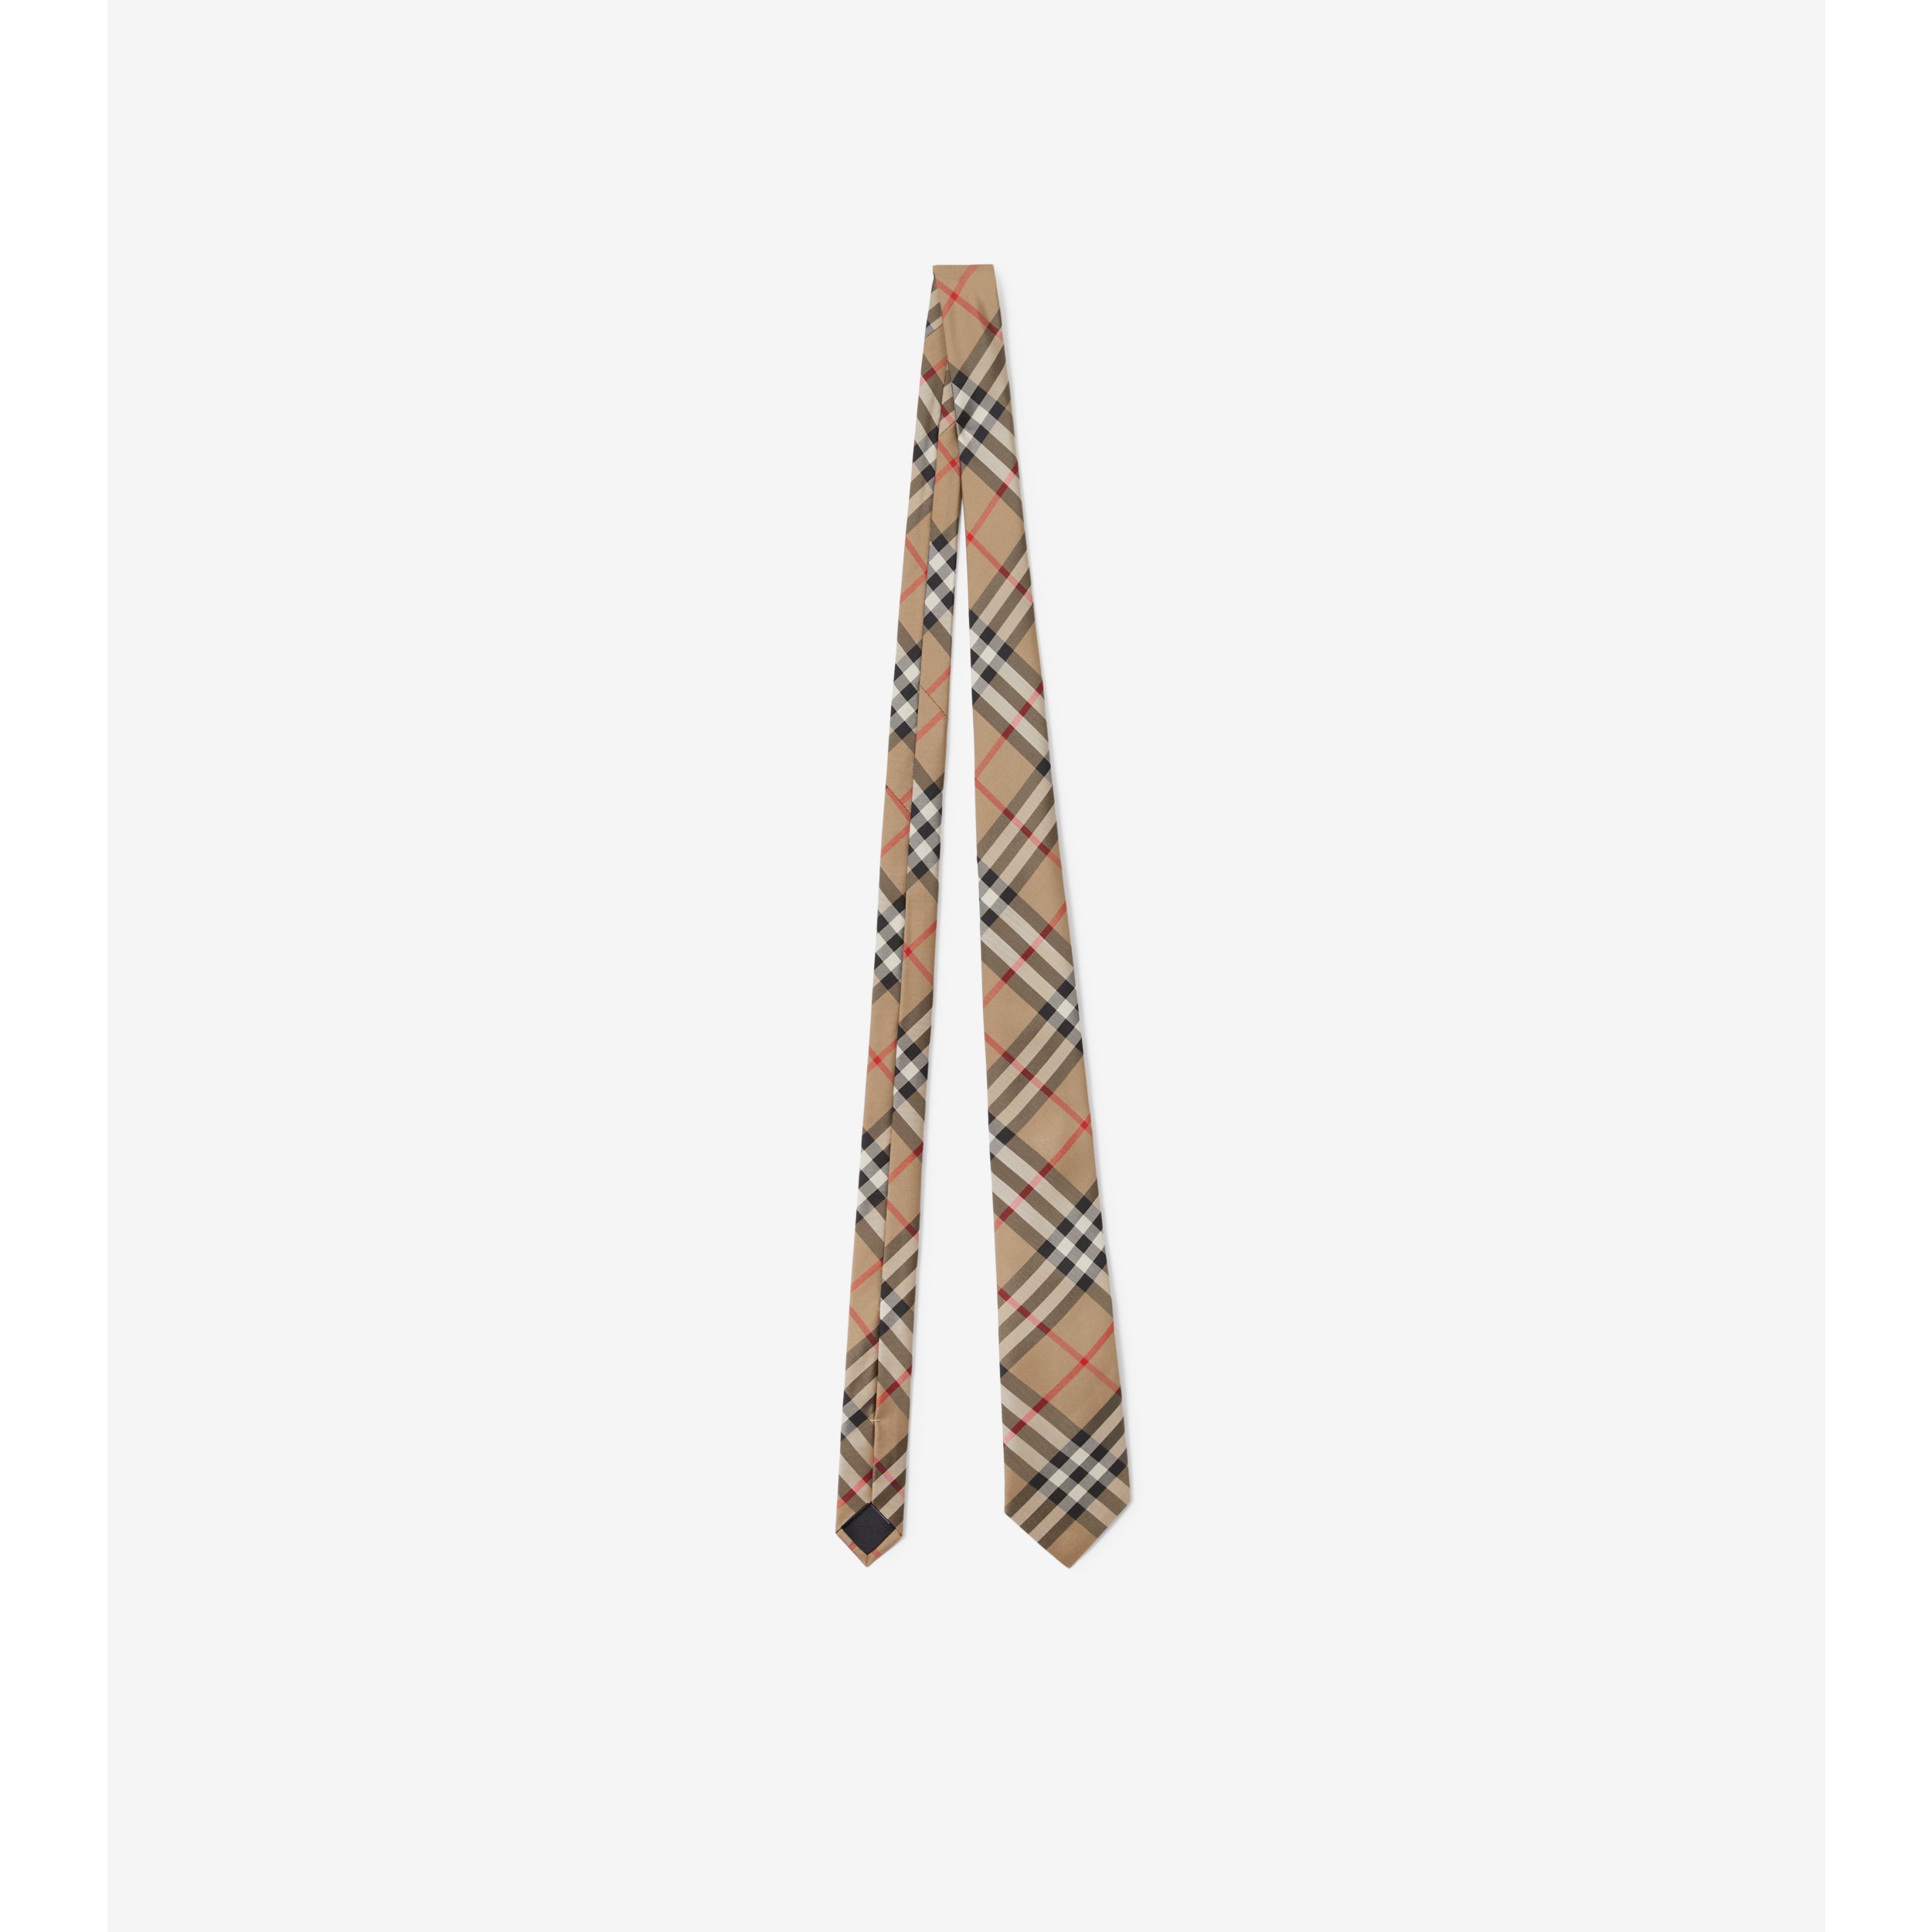 Vintage Burberry Tie Clip